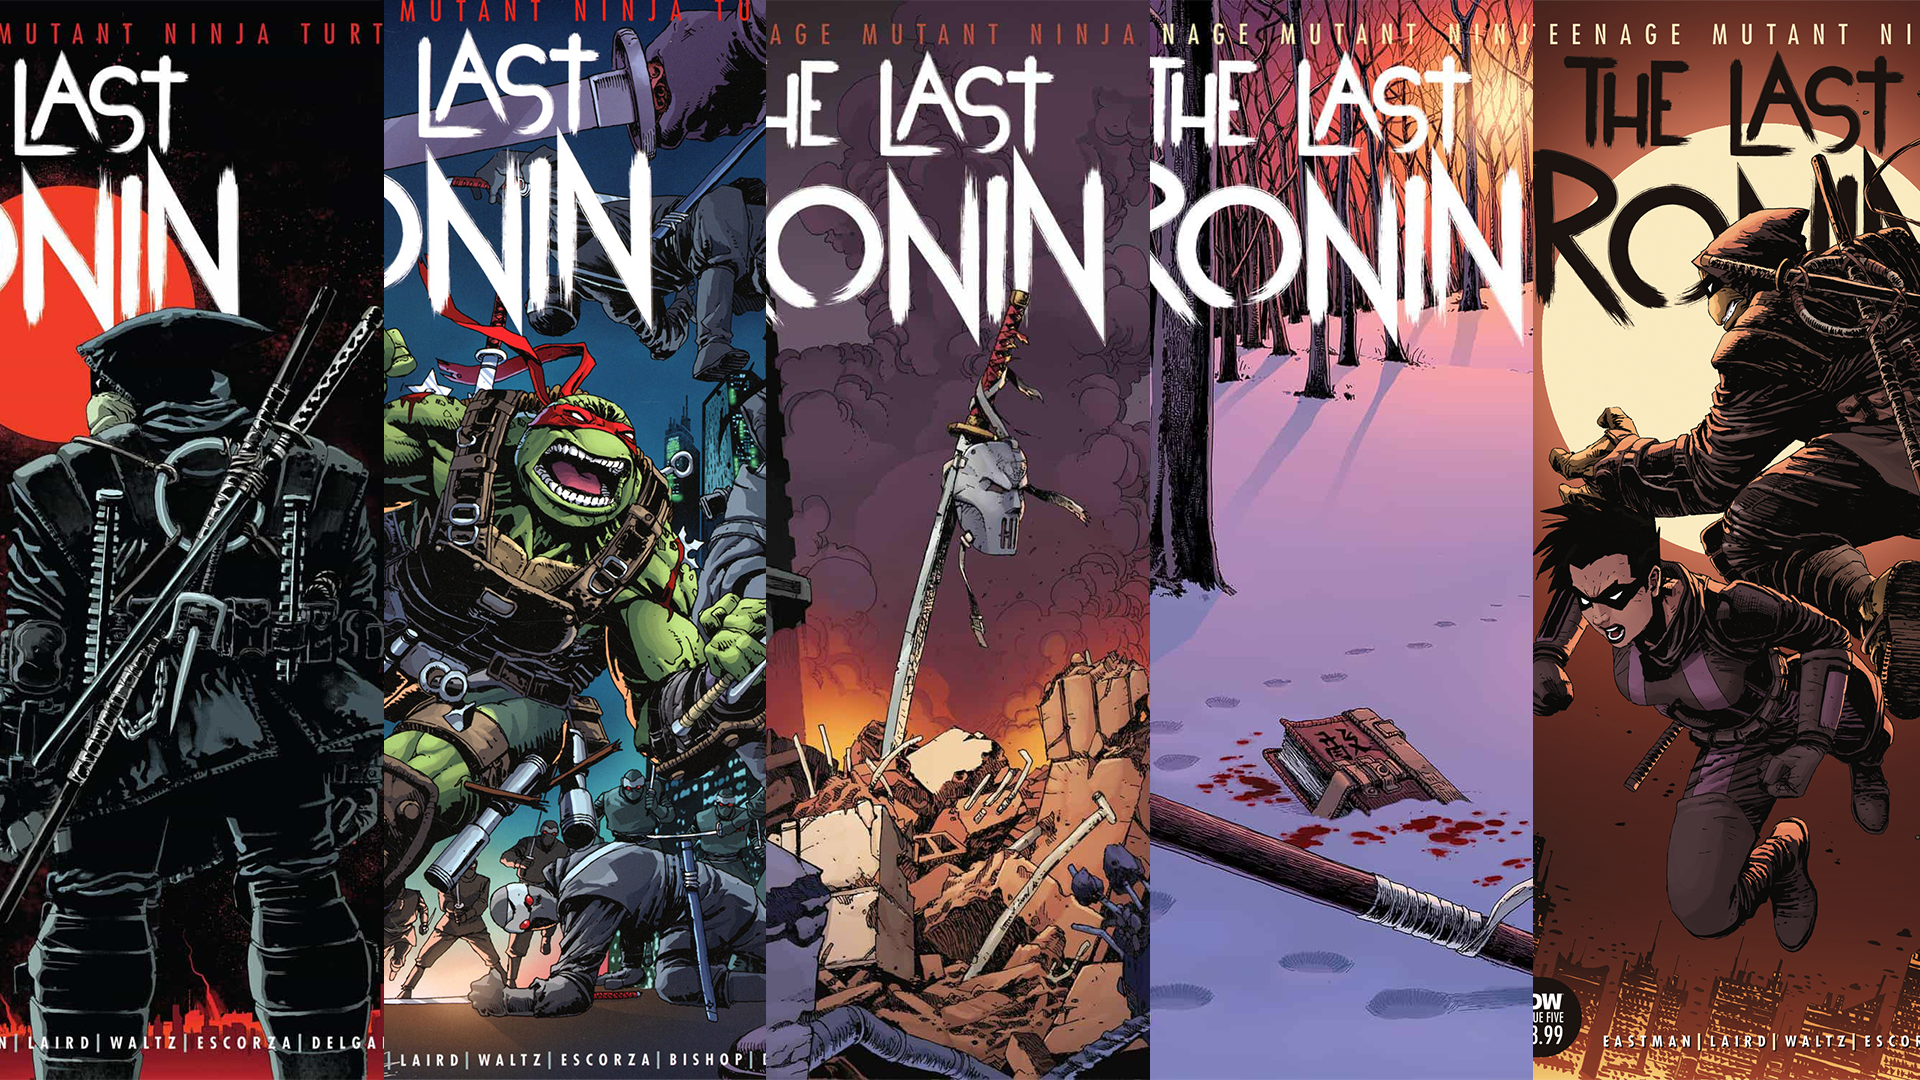 Tmnt last ronin comic series